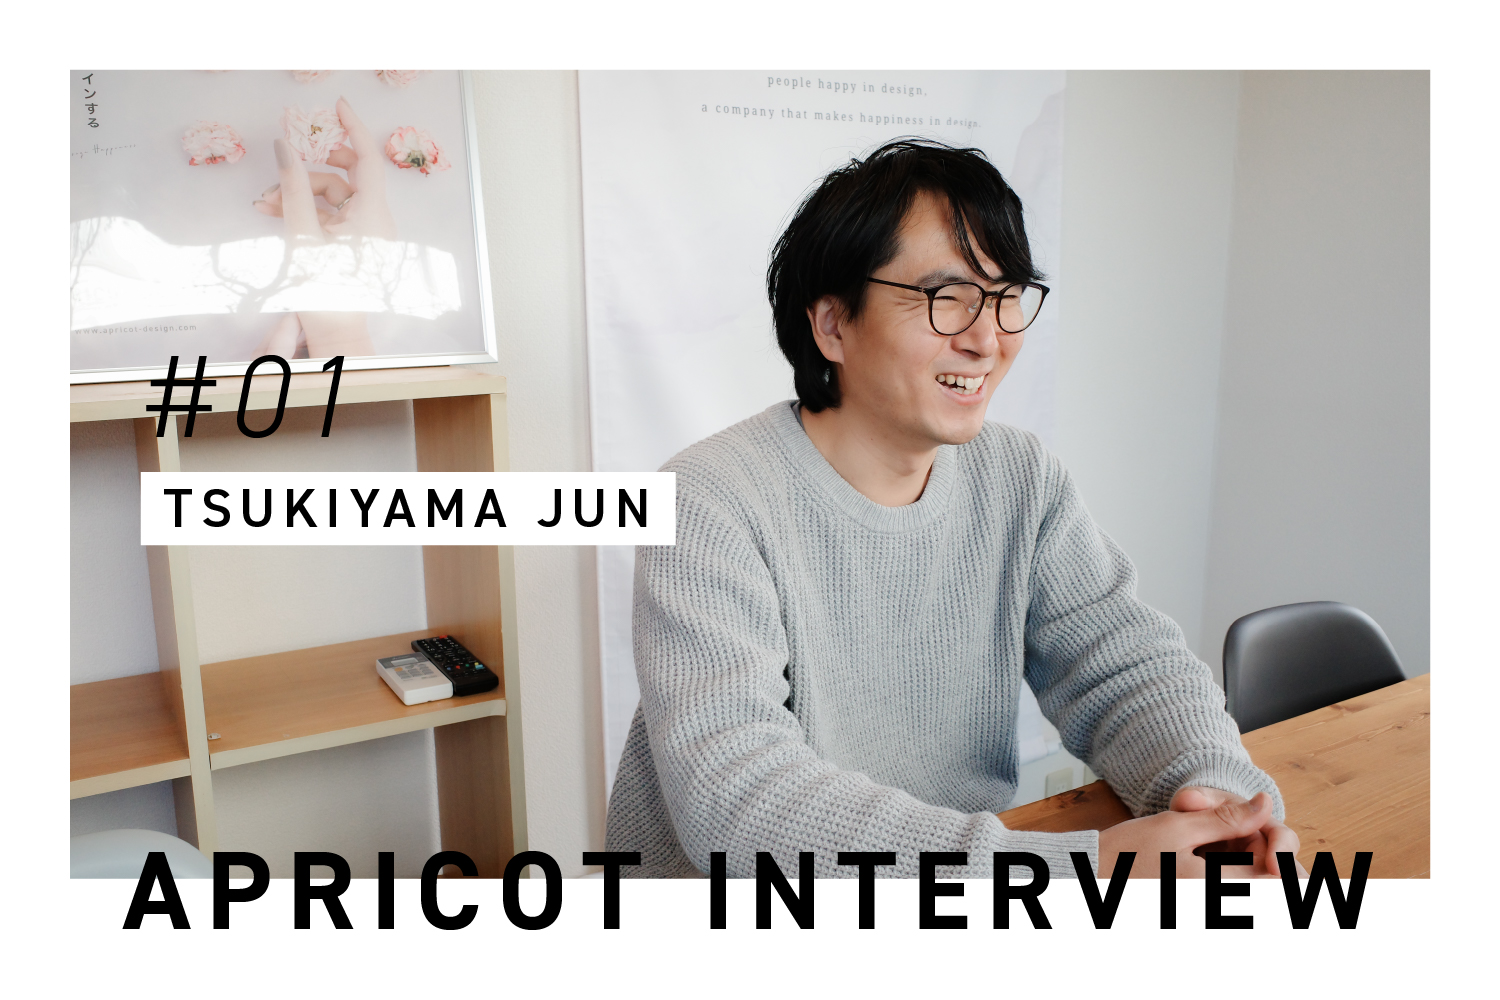 #01 APRICOT INTERVIEW  byTsukiyama Jun